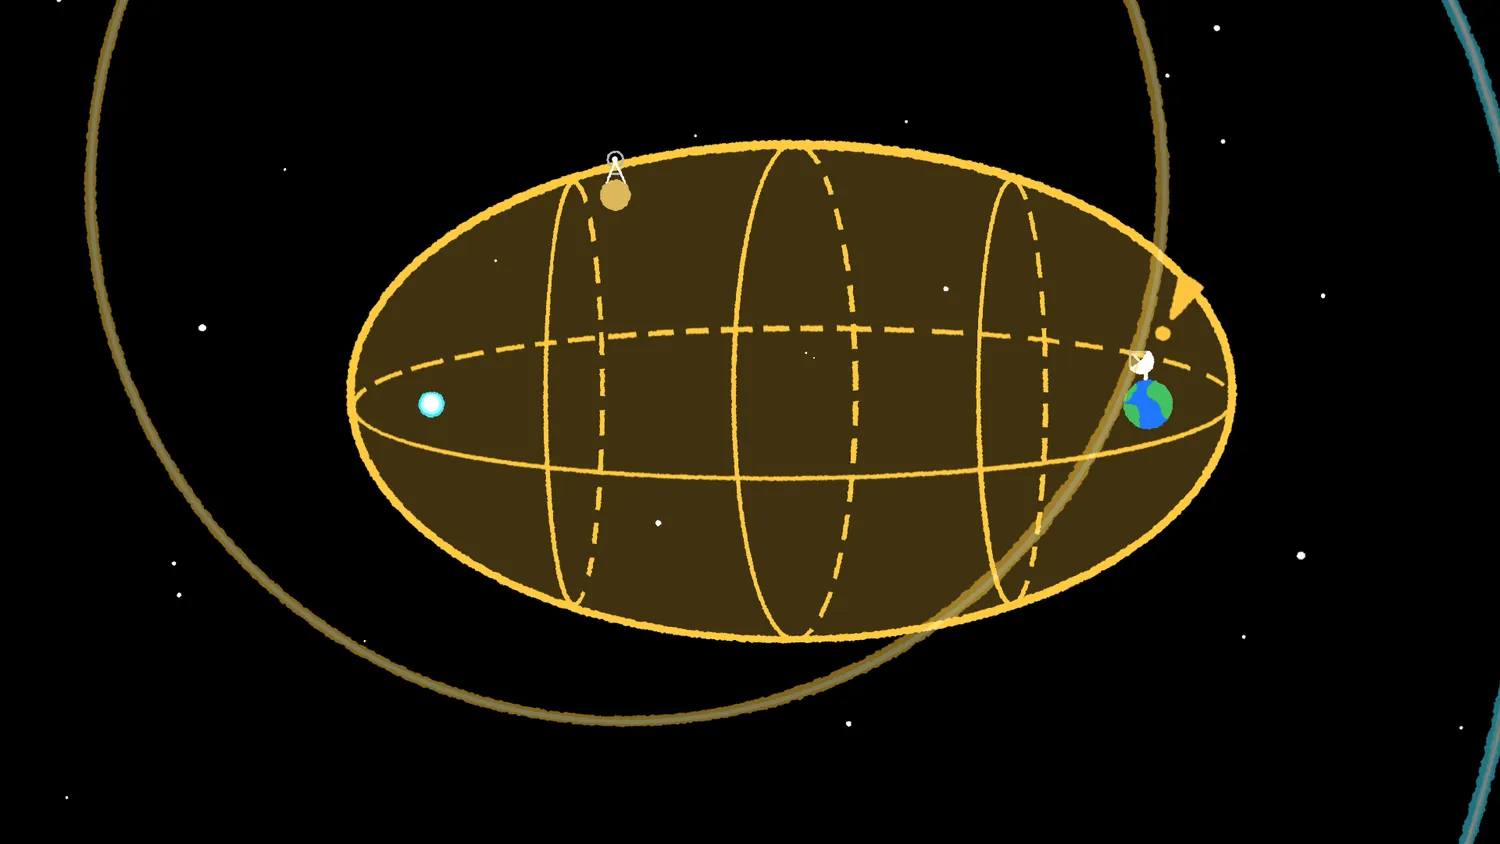 ein gelbes oval wird von den umrissen eines dunkleren braun/gelben kreises durchschnitten. innerhalb des ovals befinden sich drei vertikale und ein horizontales oval, wodurch ein 3d-look entsteht. an beiden enden des ovals befinden sich kleine kreise, die wie die erde gefärbt sind, und ein kleinerer blauer punkt. die beiden hängen im raum.